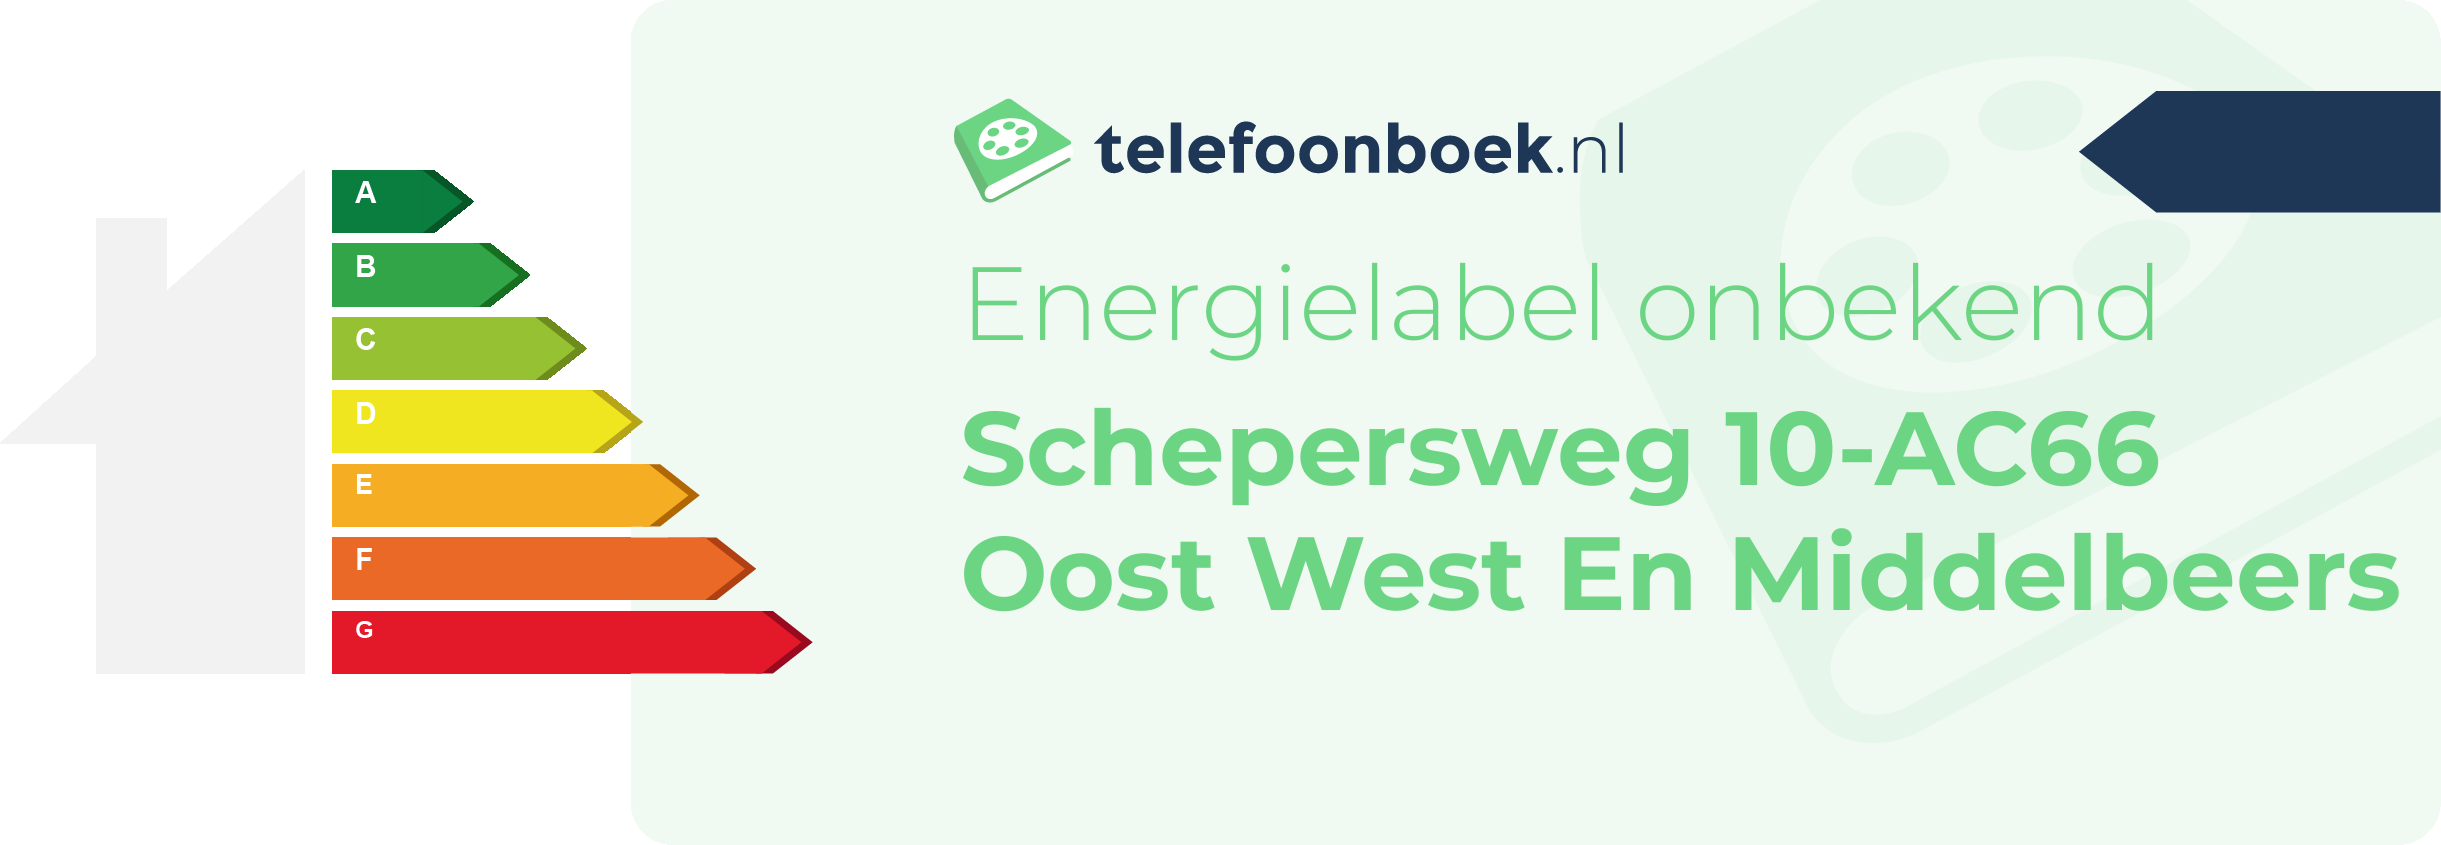 Energielabel Schepersweg 10-AC66 Oost West En Middelbeers